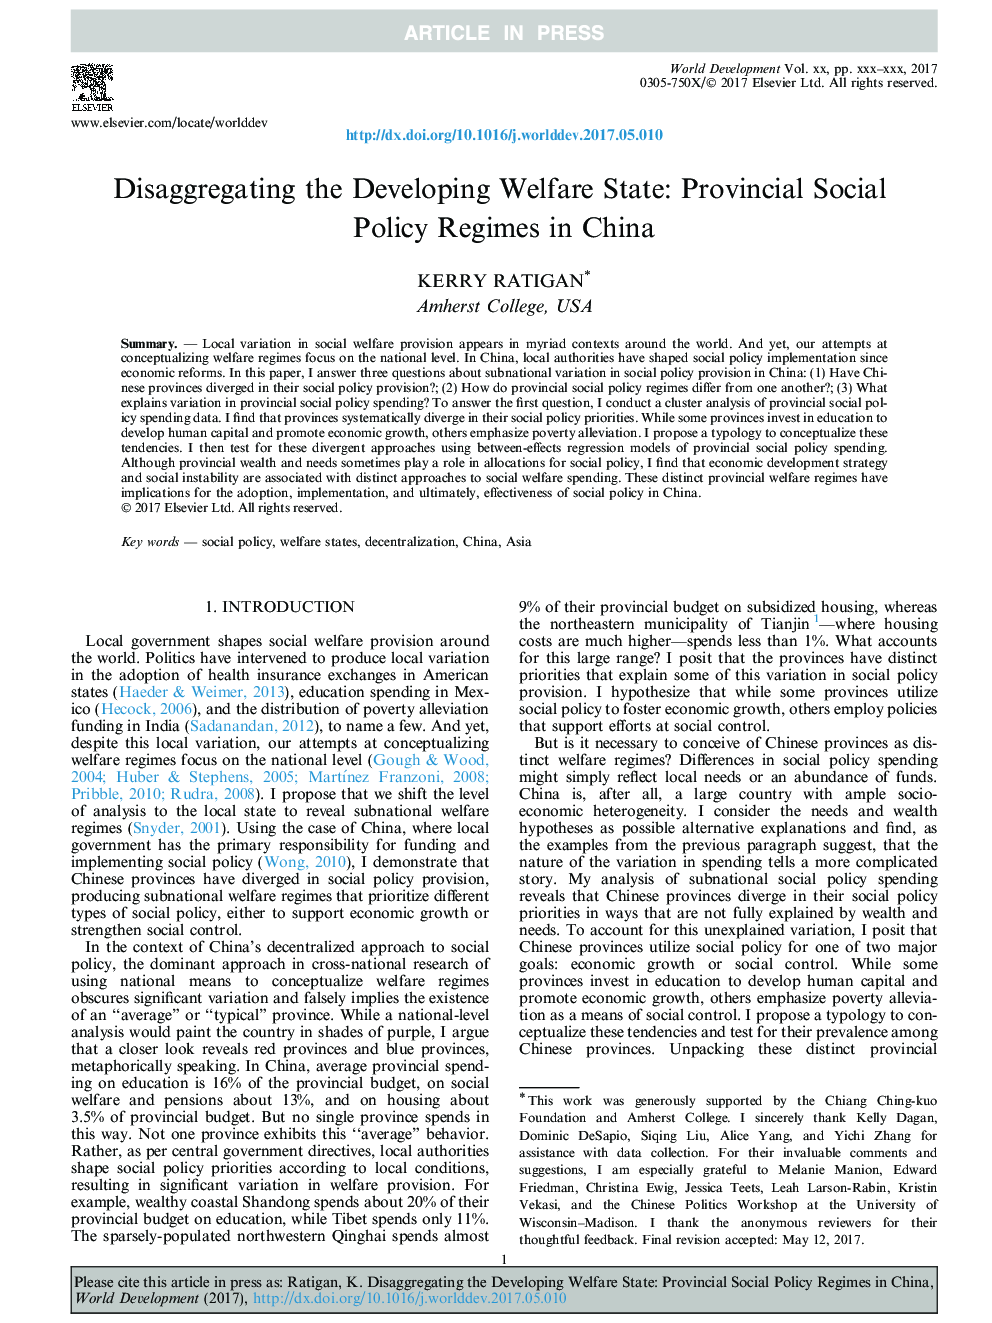 عدم تقسیم دولت رفاه در حال توسعه: رژیم های سیاست های اجتماعی استان در چین 